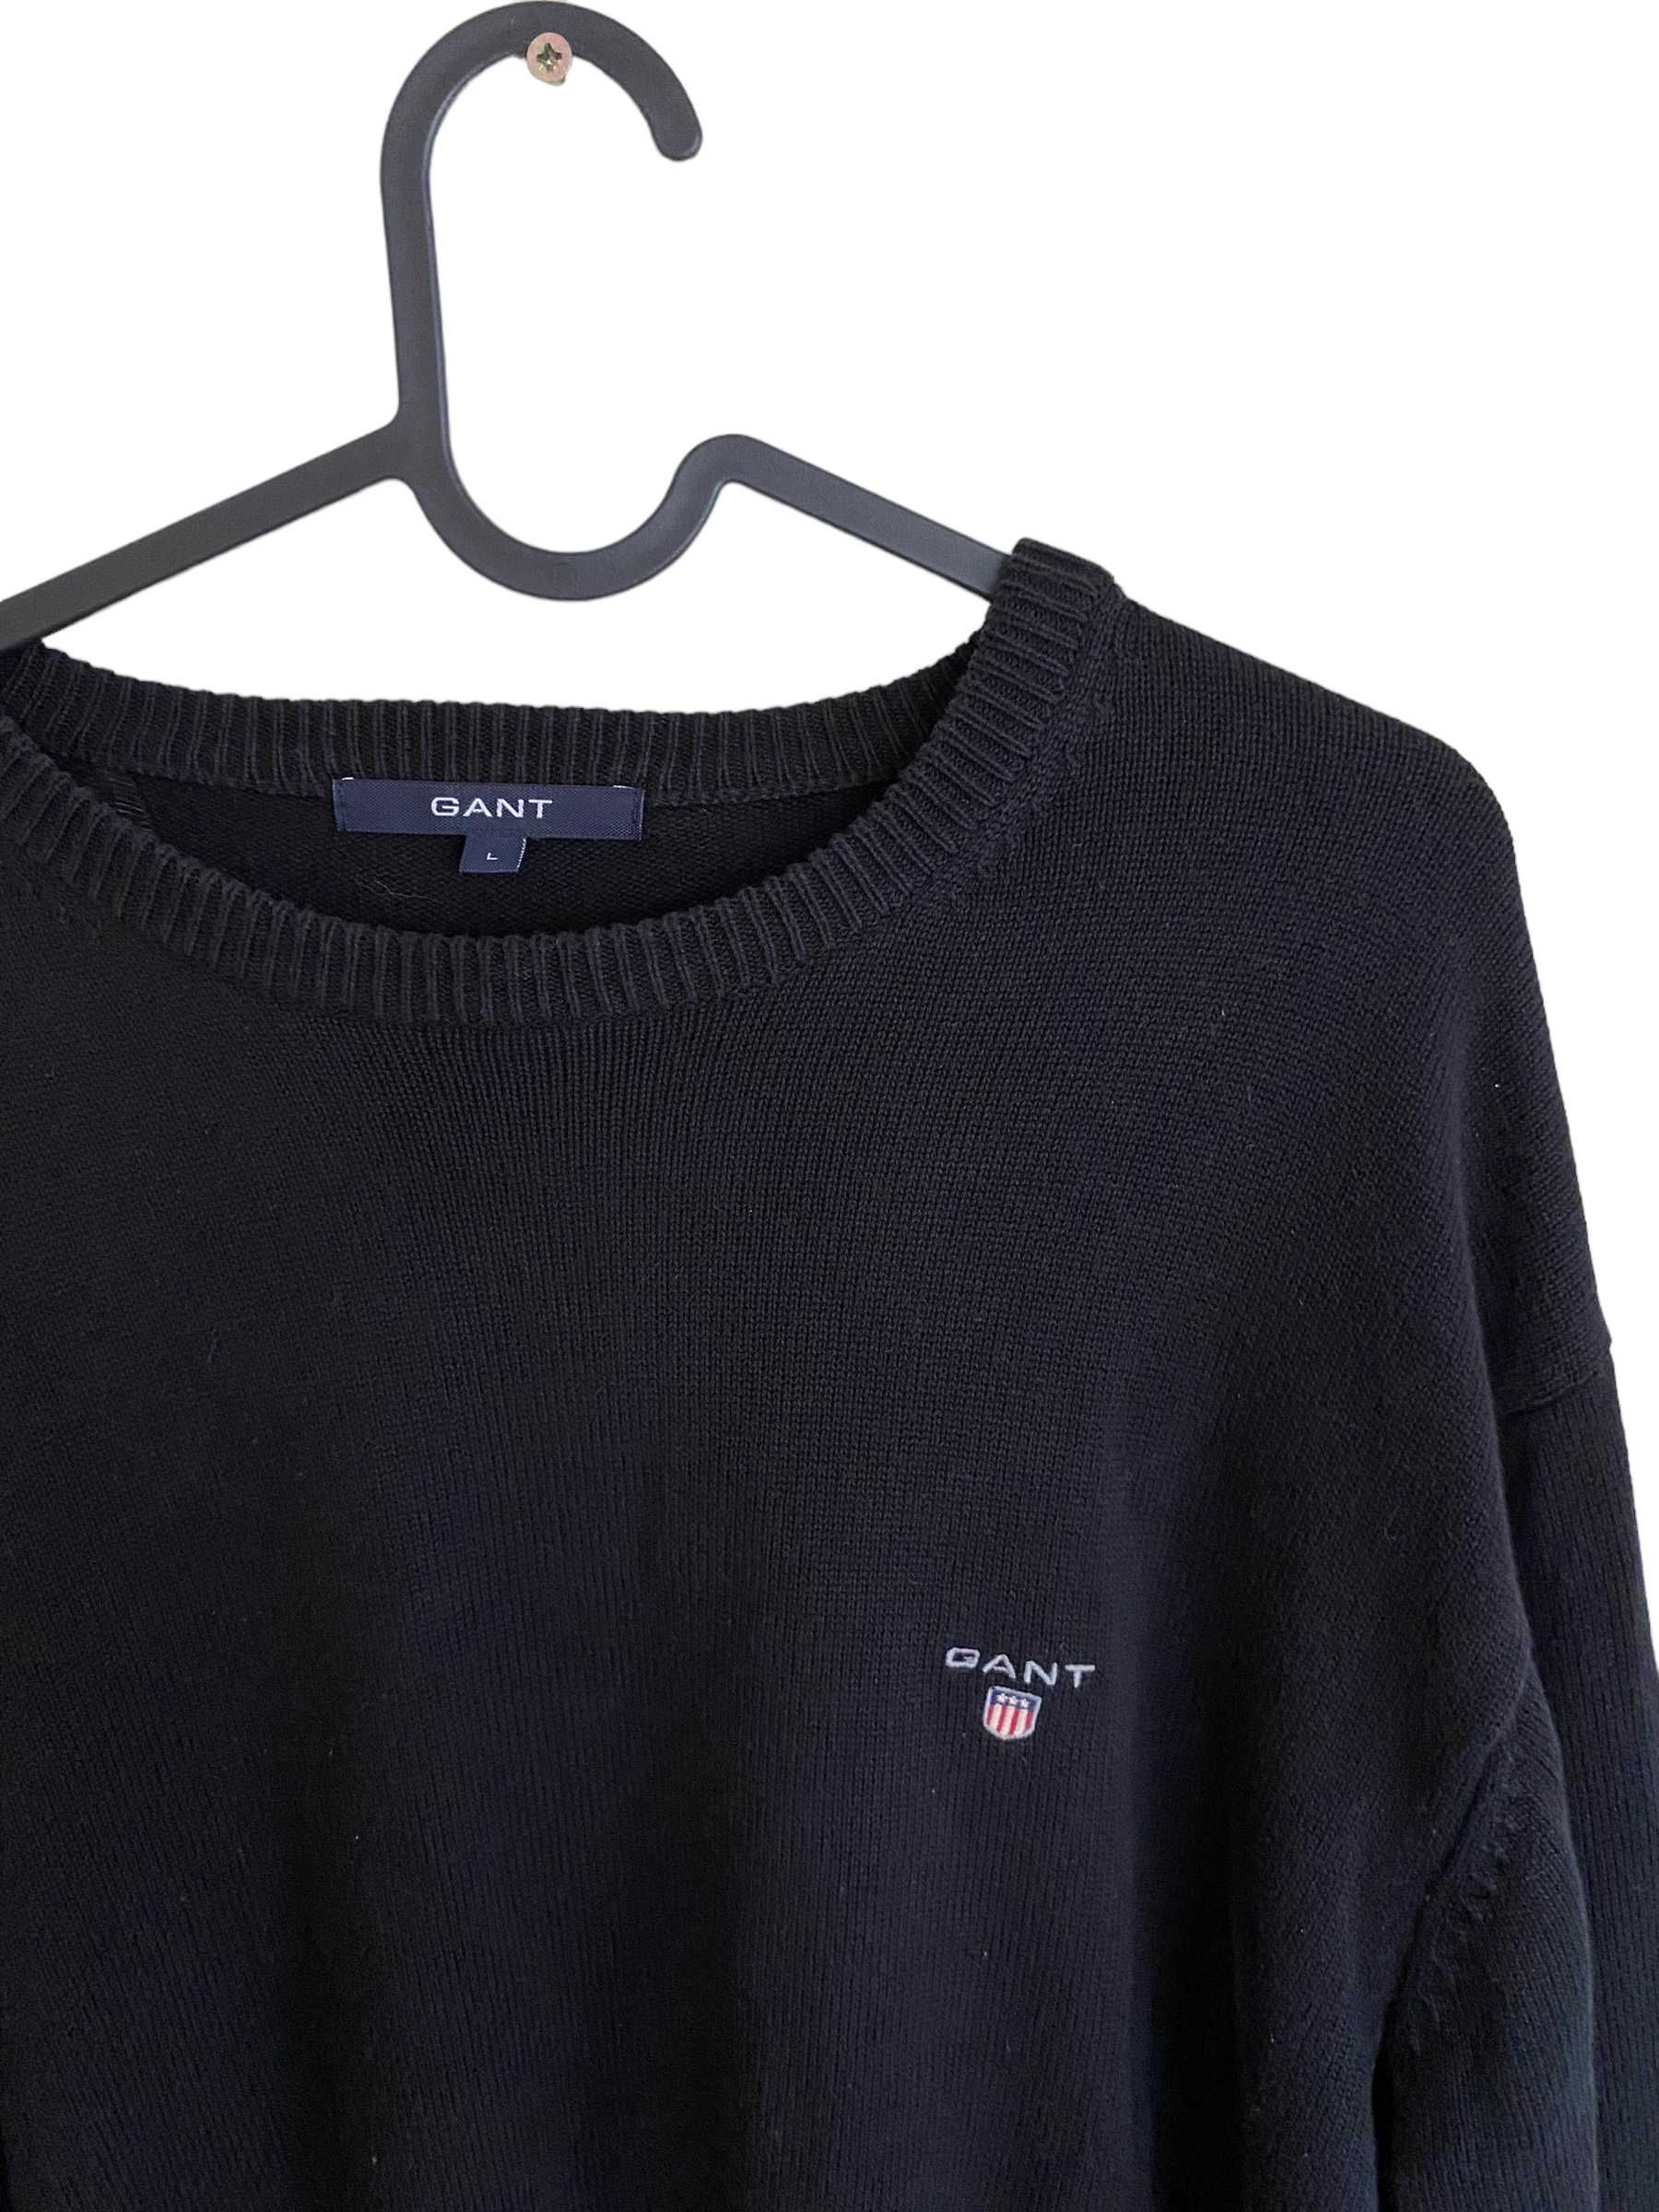 GANT czarny sweter, rozmiar L, stan bardzo dobry